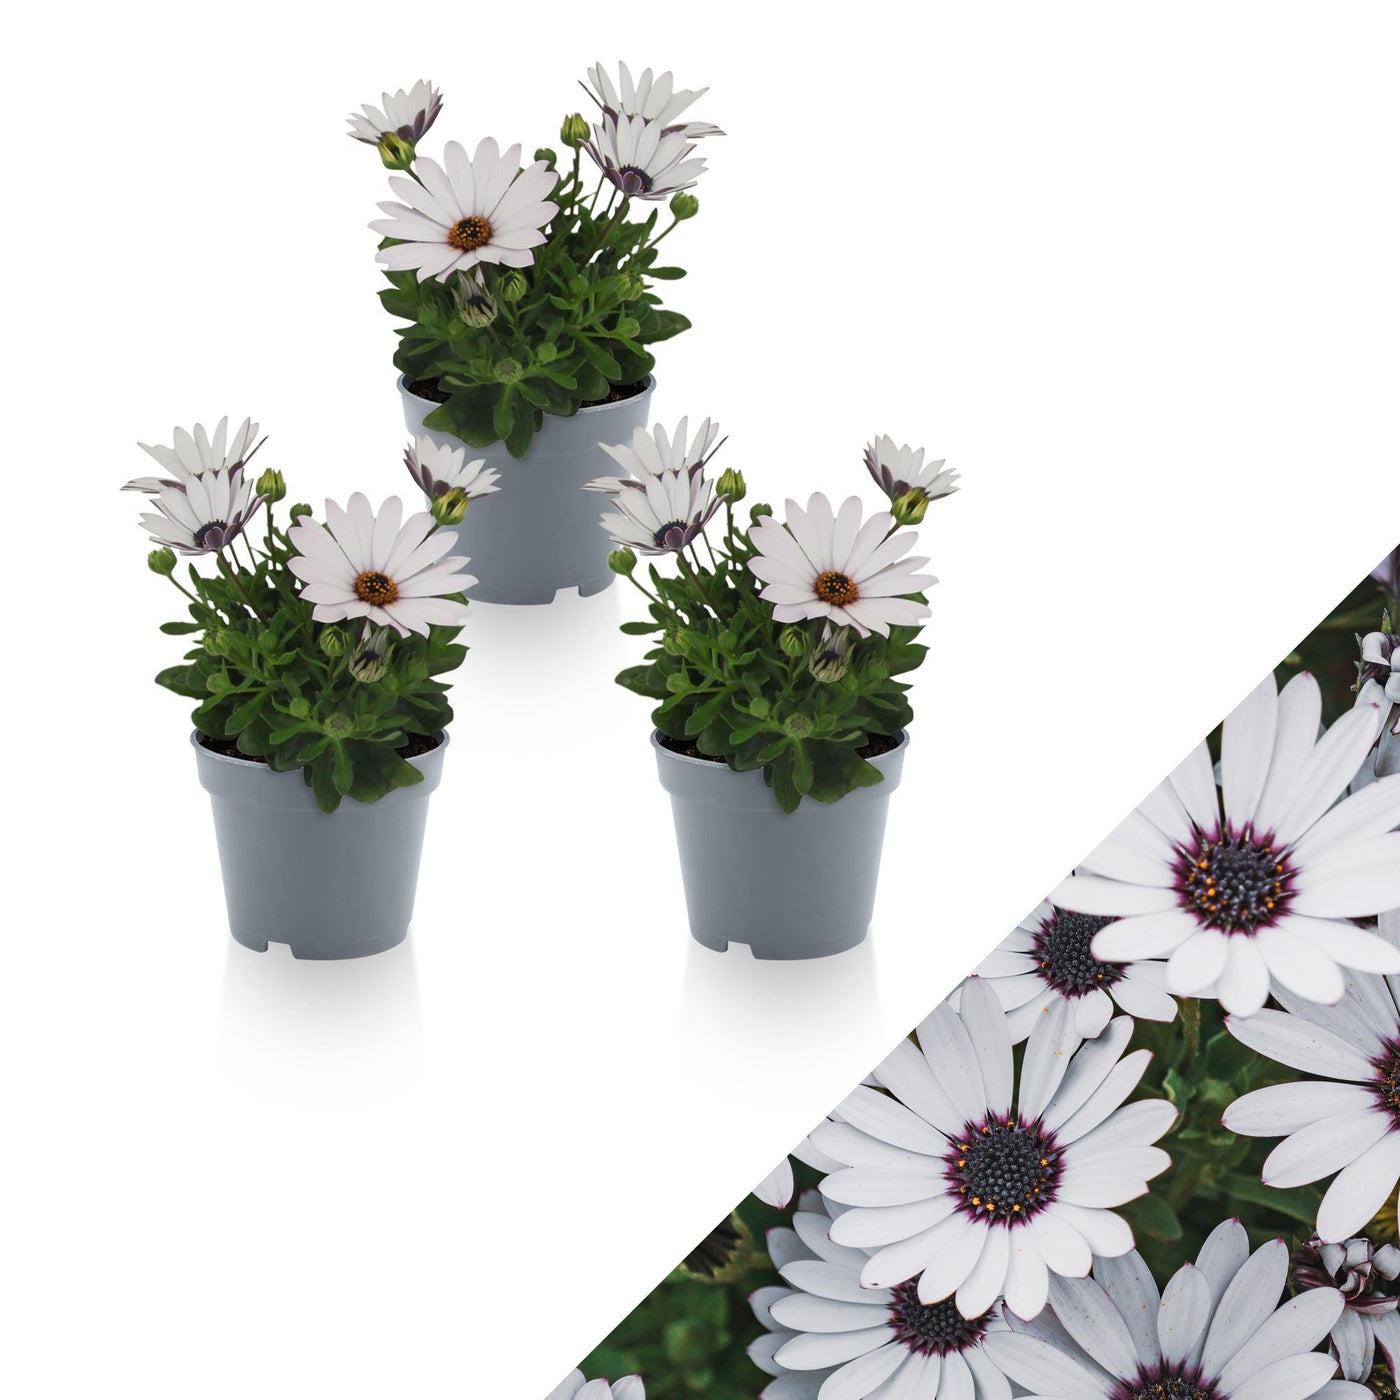 Kapkörbchen (Osteospermum White Ecklonis) - Nachhaltige Zimmerpflanzen kaufen Botanicly Foto 1